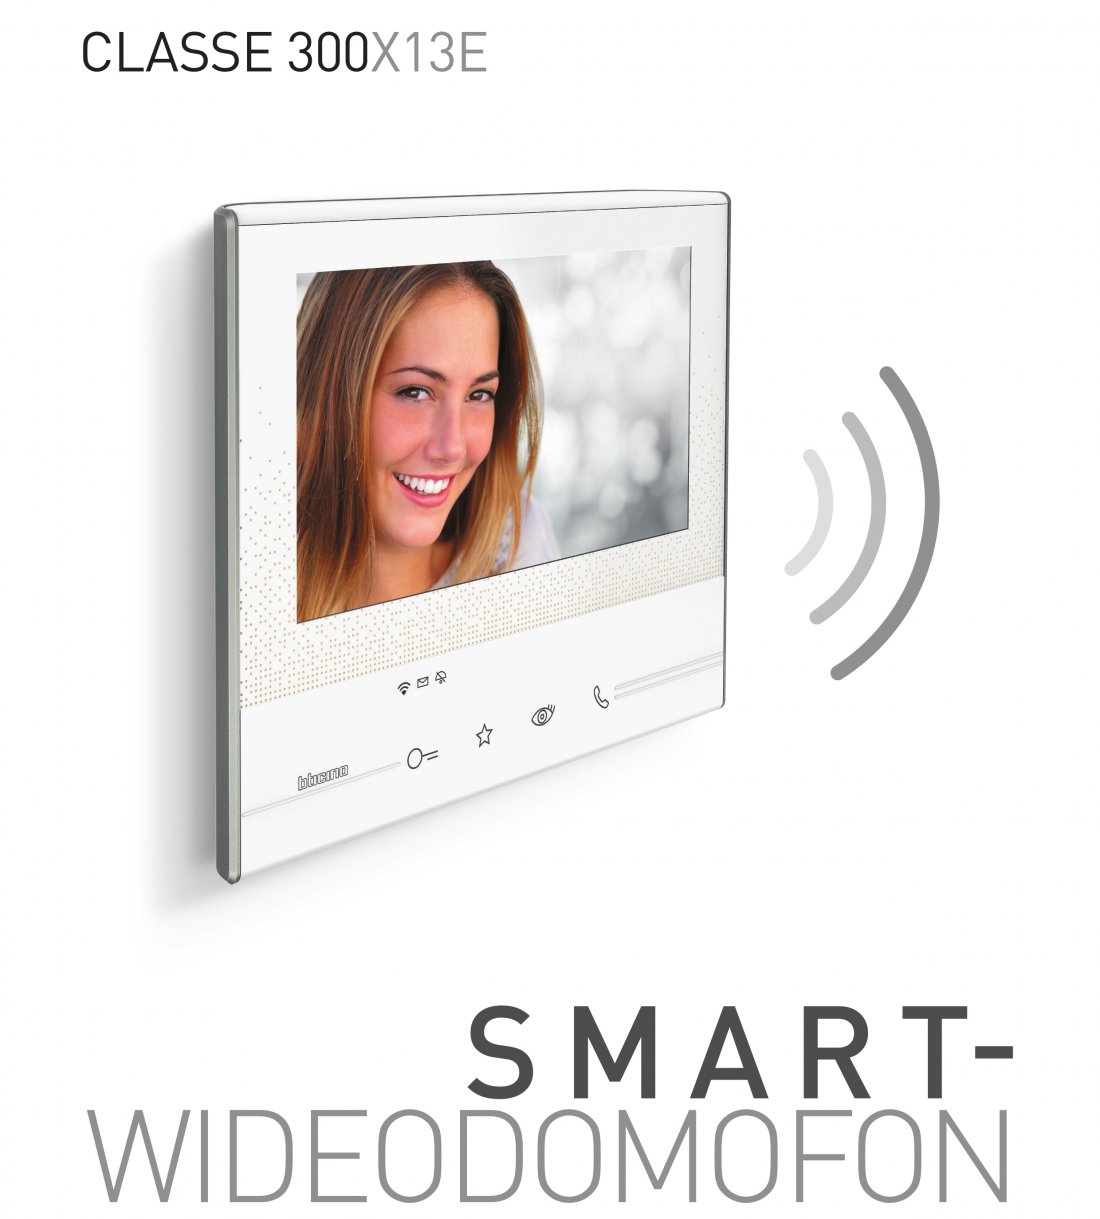 Nowy wideodomofon Smart Wi-Fi umożliwia obsługę funkcji systemu przy użyciu powiązanego z nim smartfona.